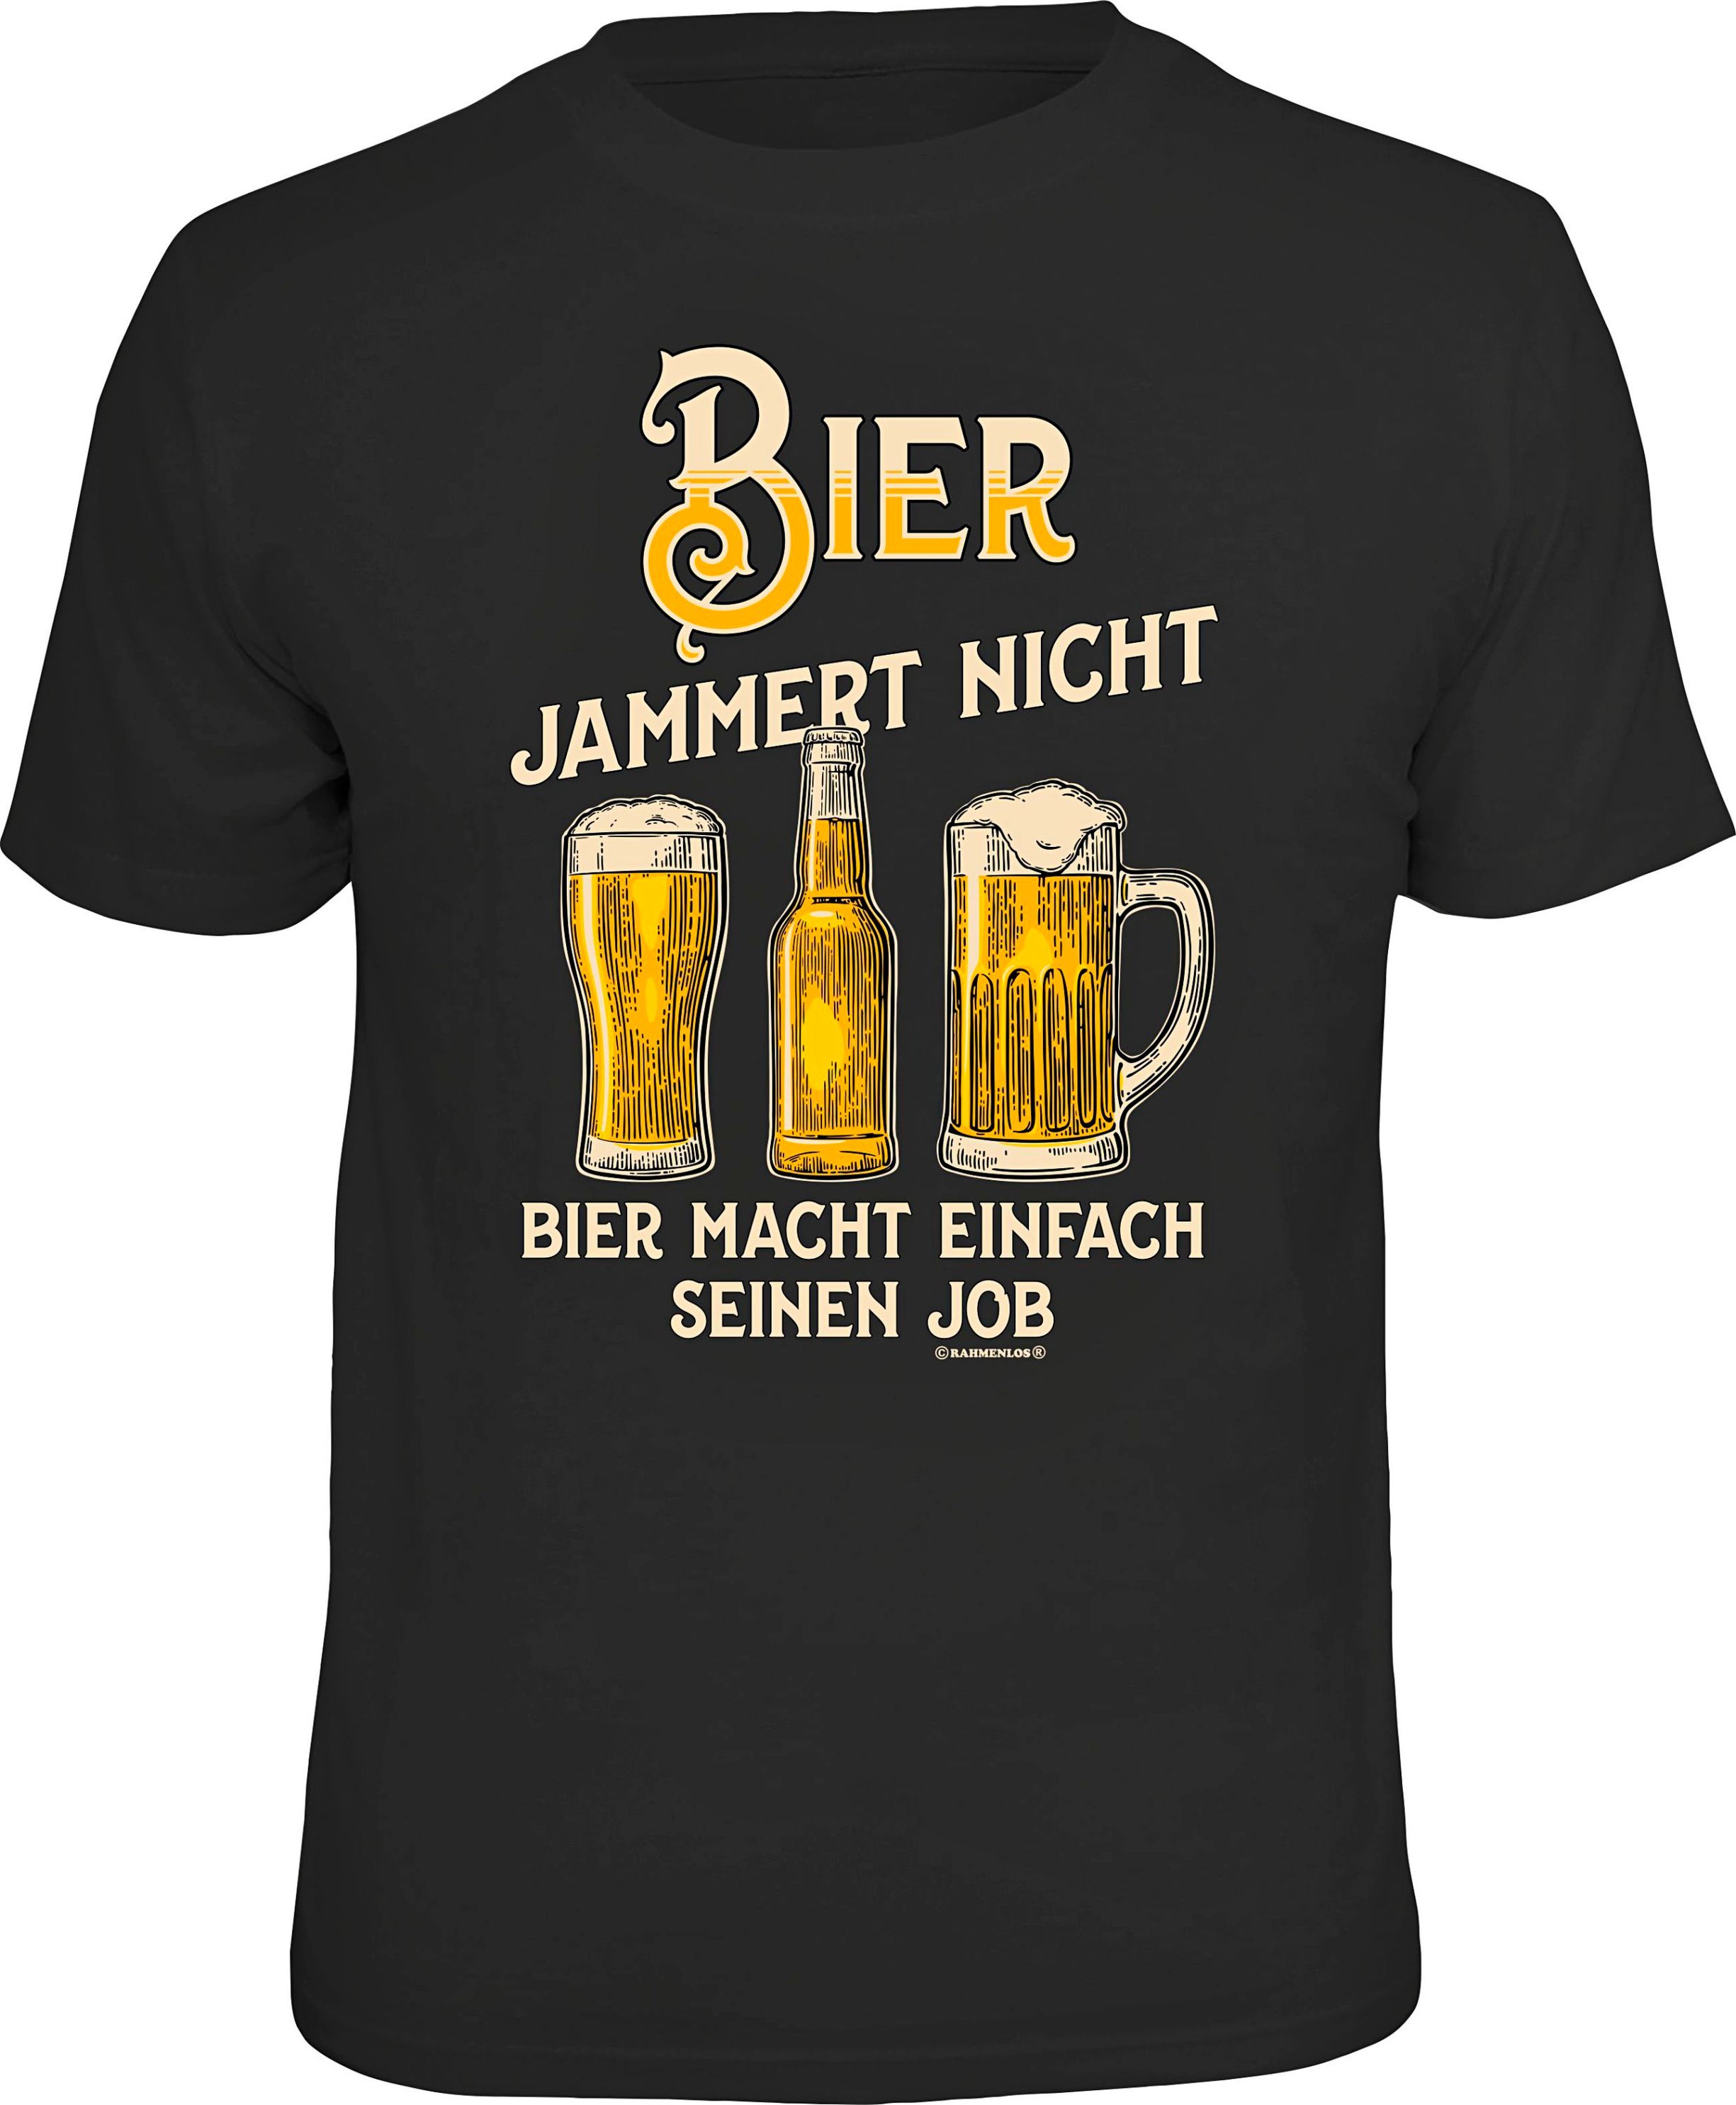 T-Shirt Bier jammert nicht Größe: XL bestellen | Weltbild.de